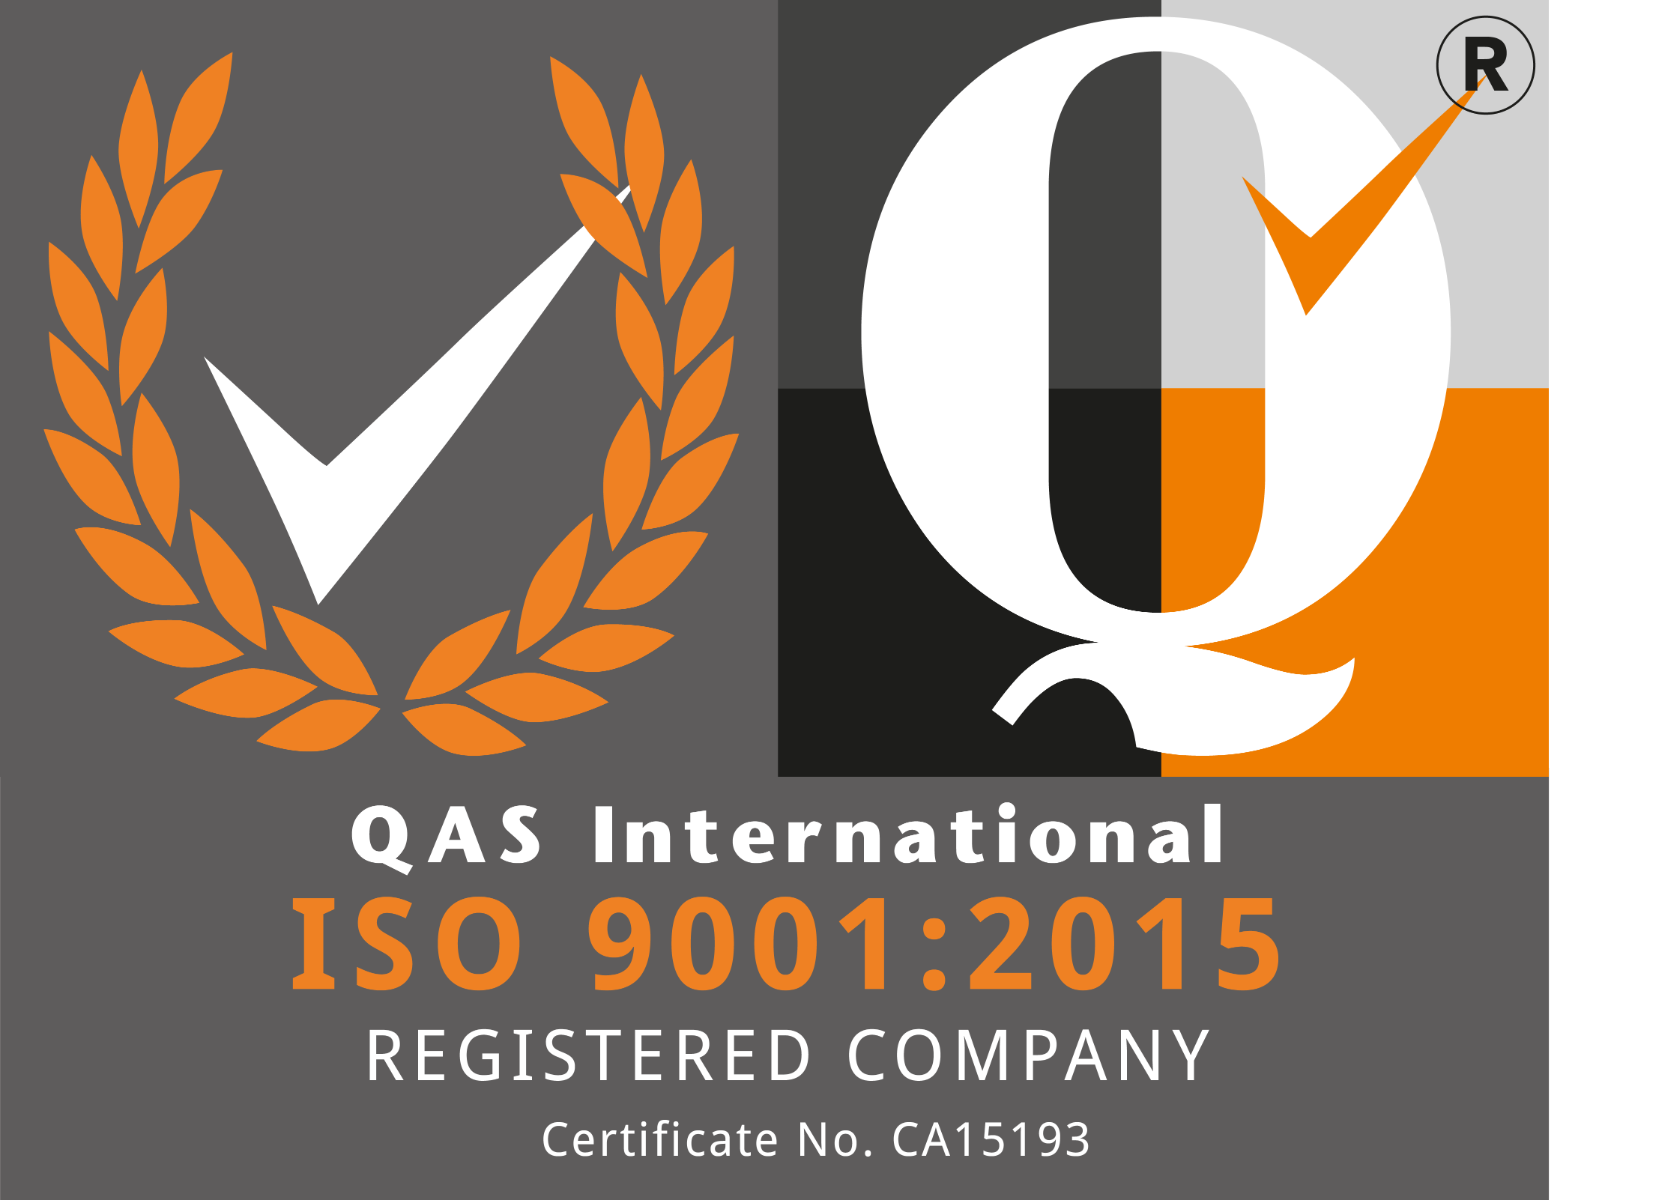 Kaisertech ISO 9001:2015 Certification